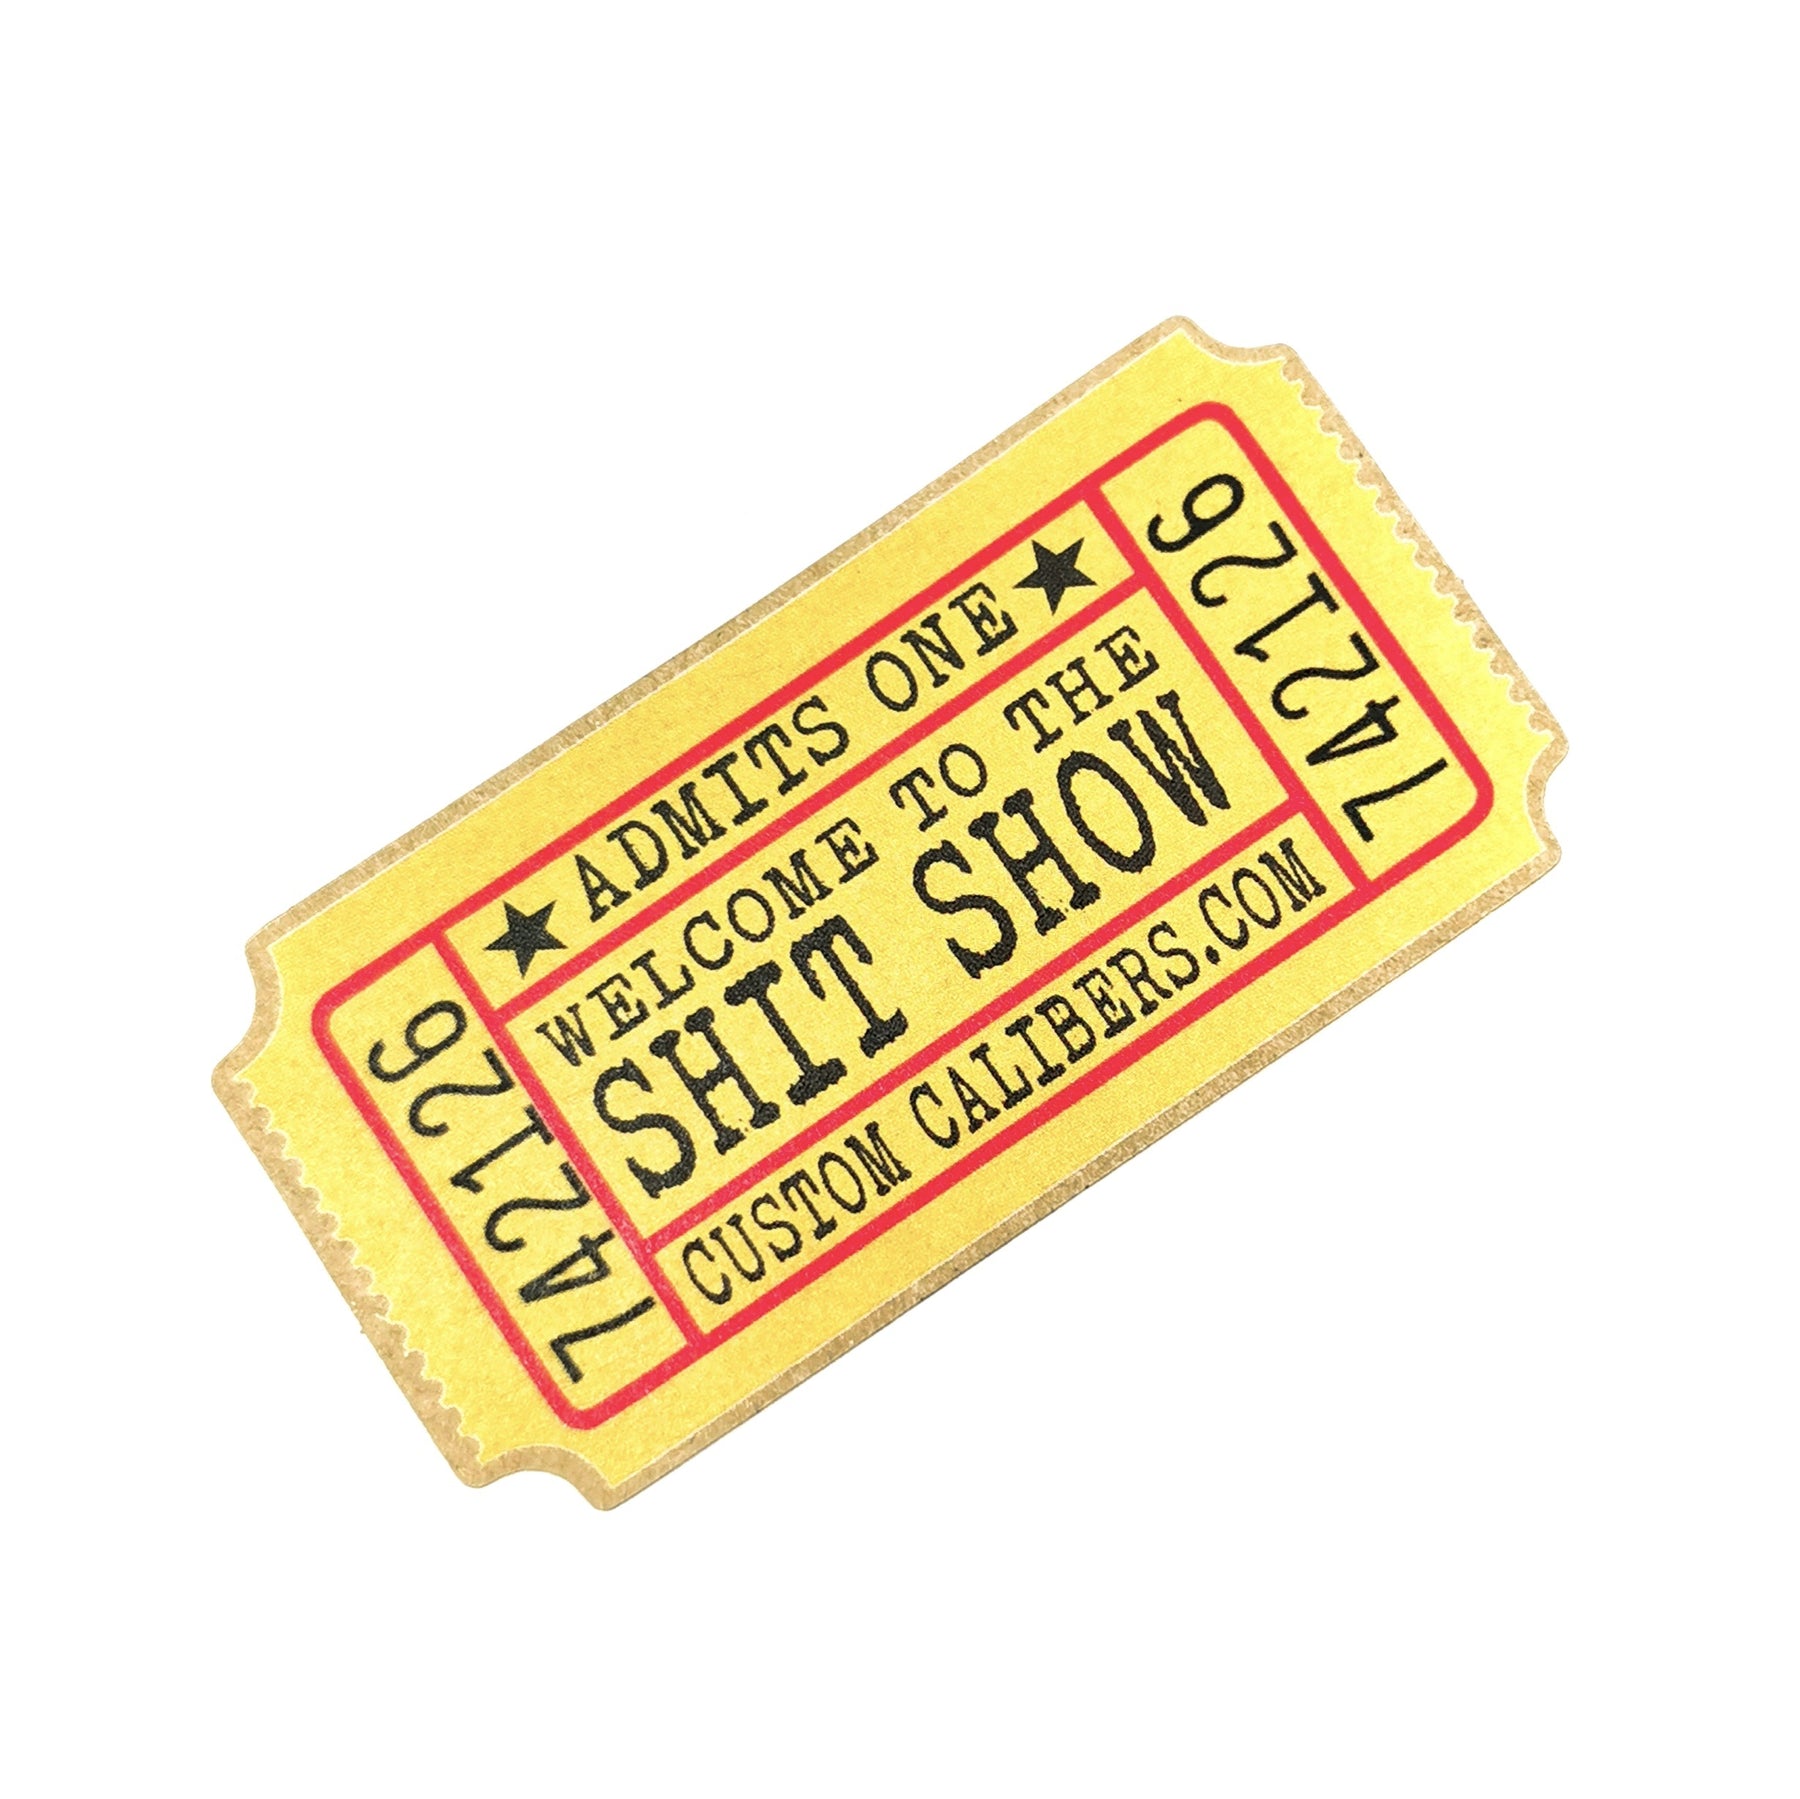 Shit Show sticker